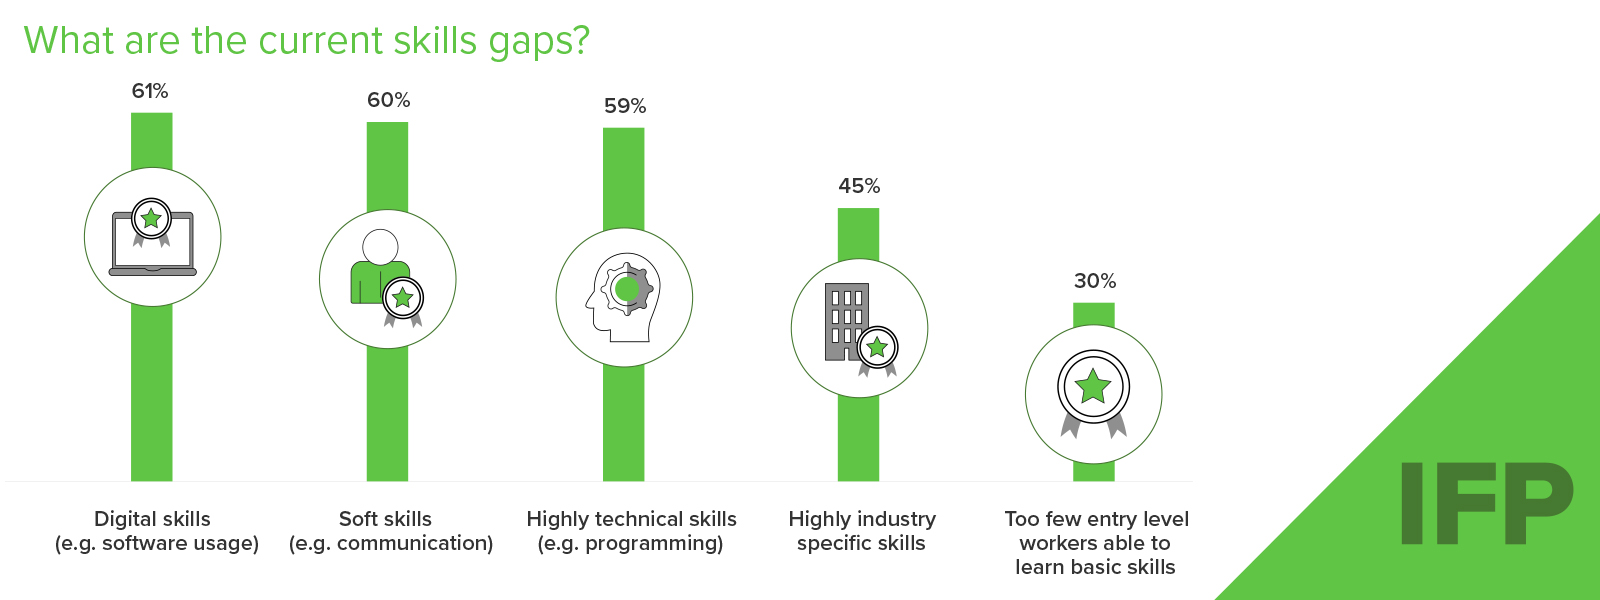 IFP L&D Report Visual Skills Gaps